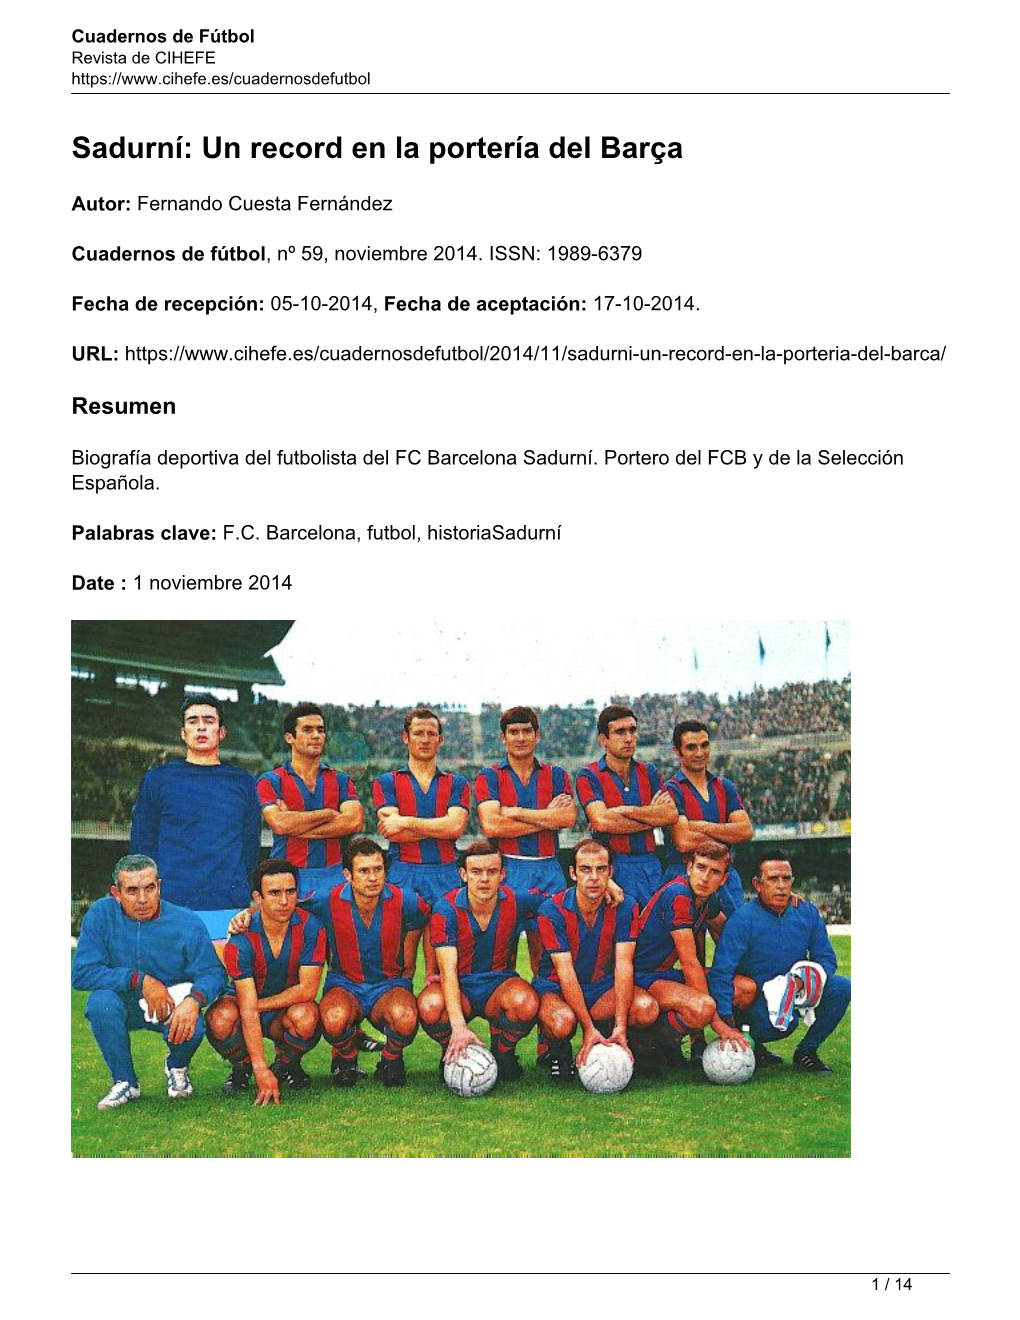 Sadurní: Un Record En La Portería Del Barça